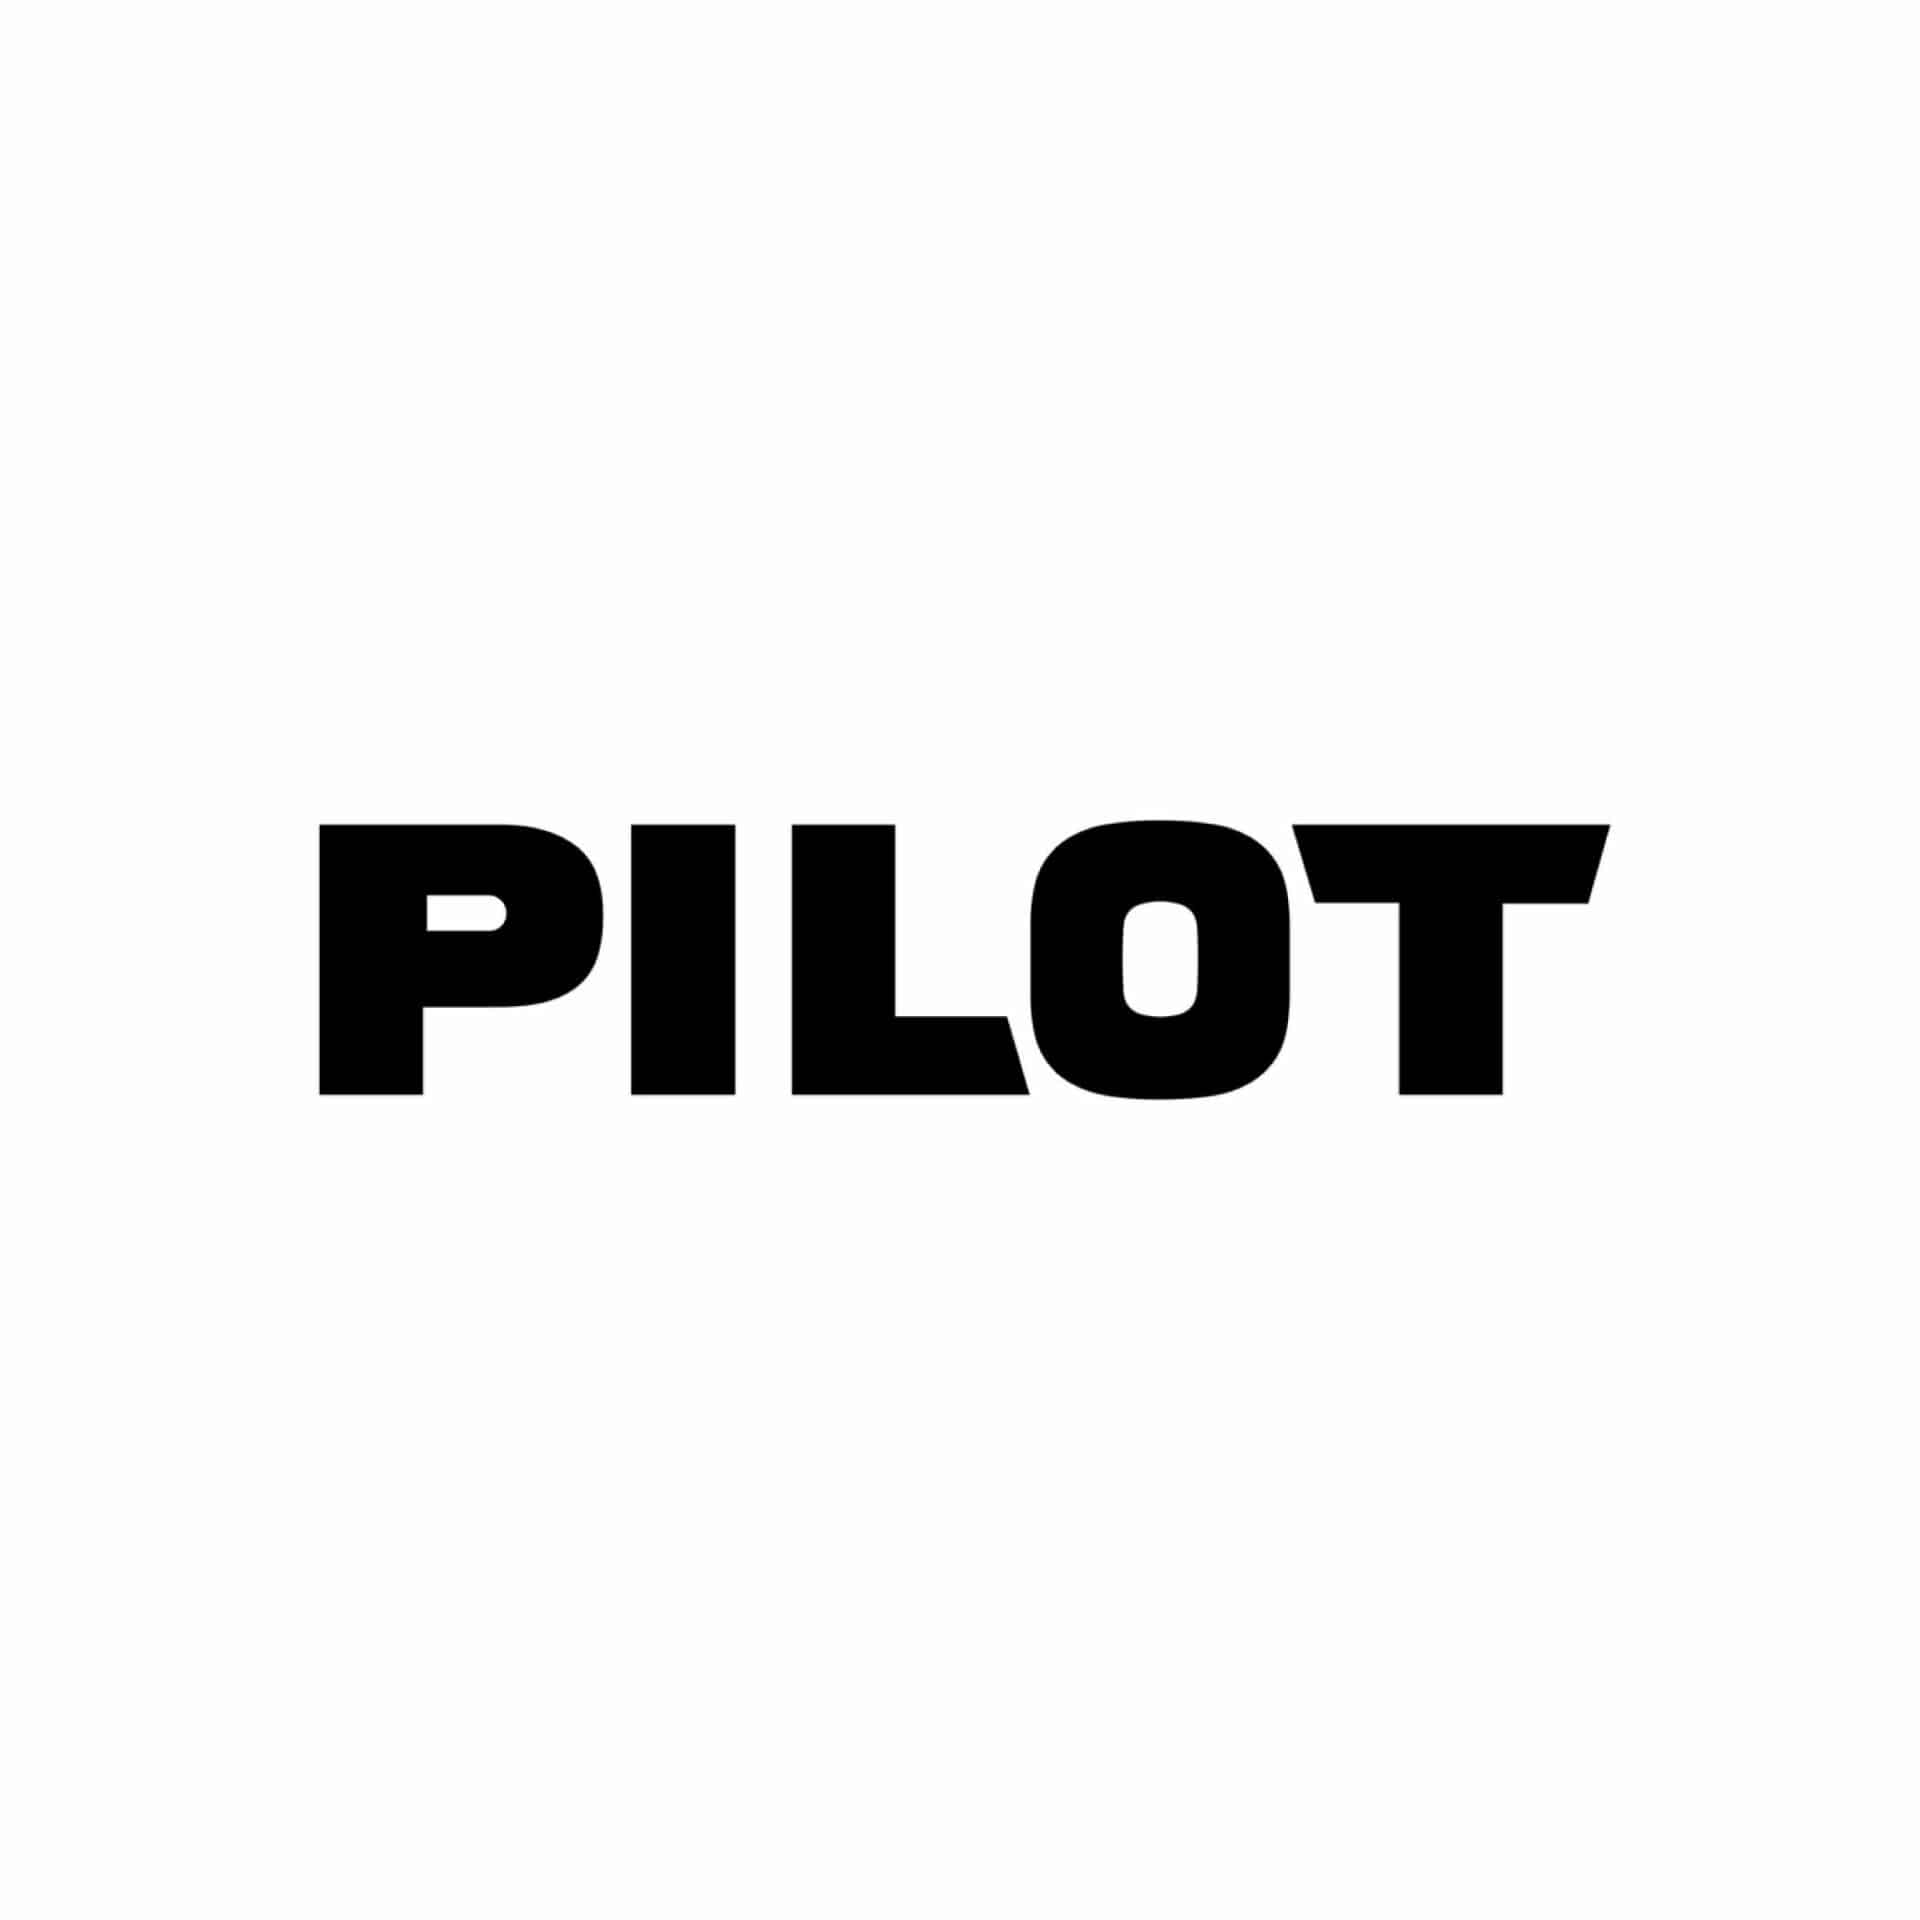 Pilot vulpennen